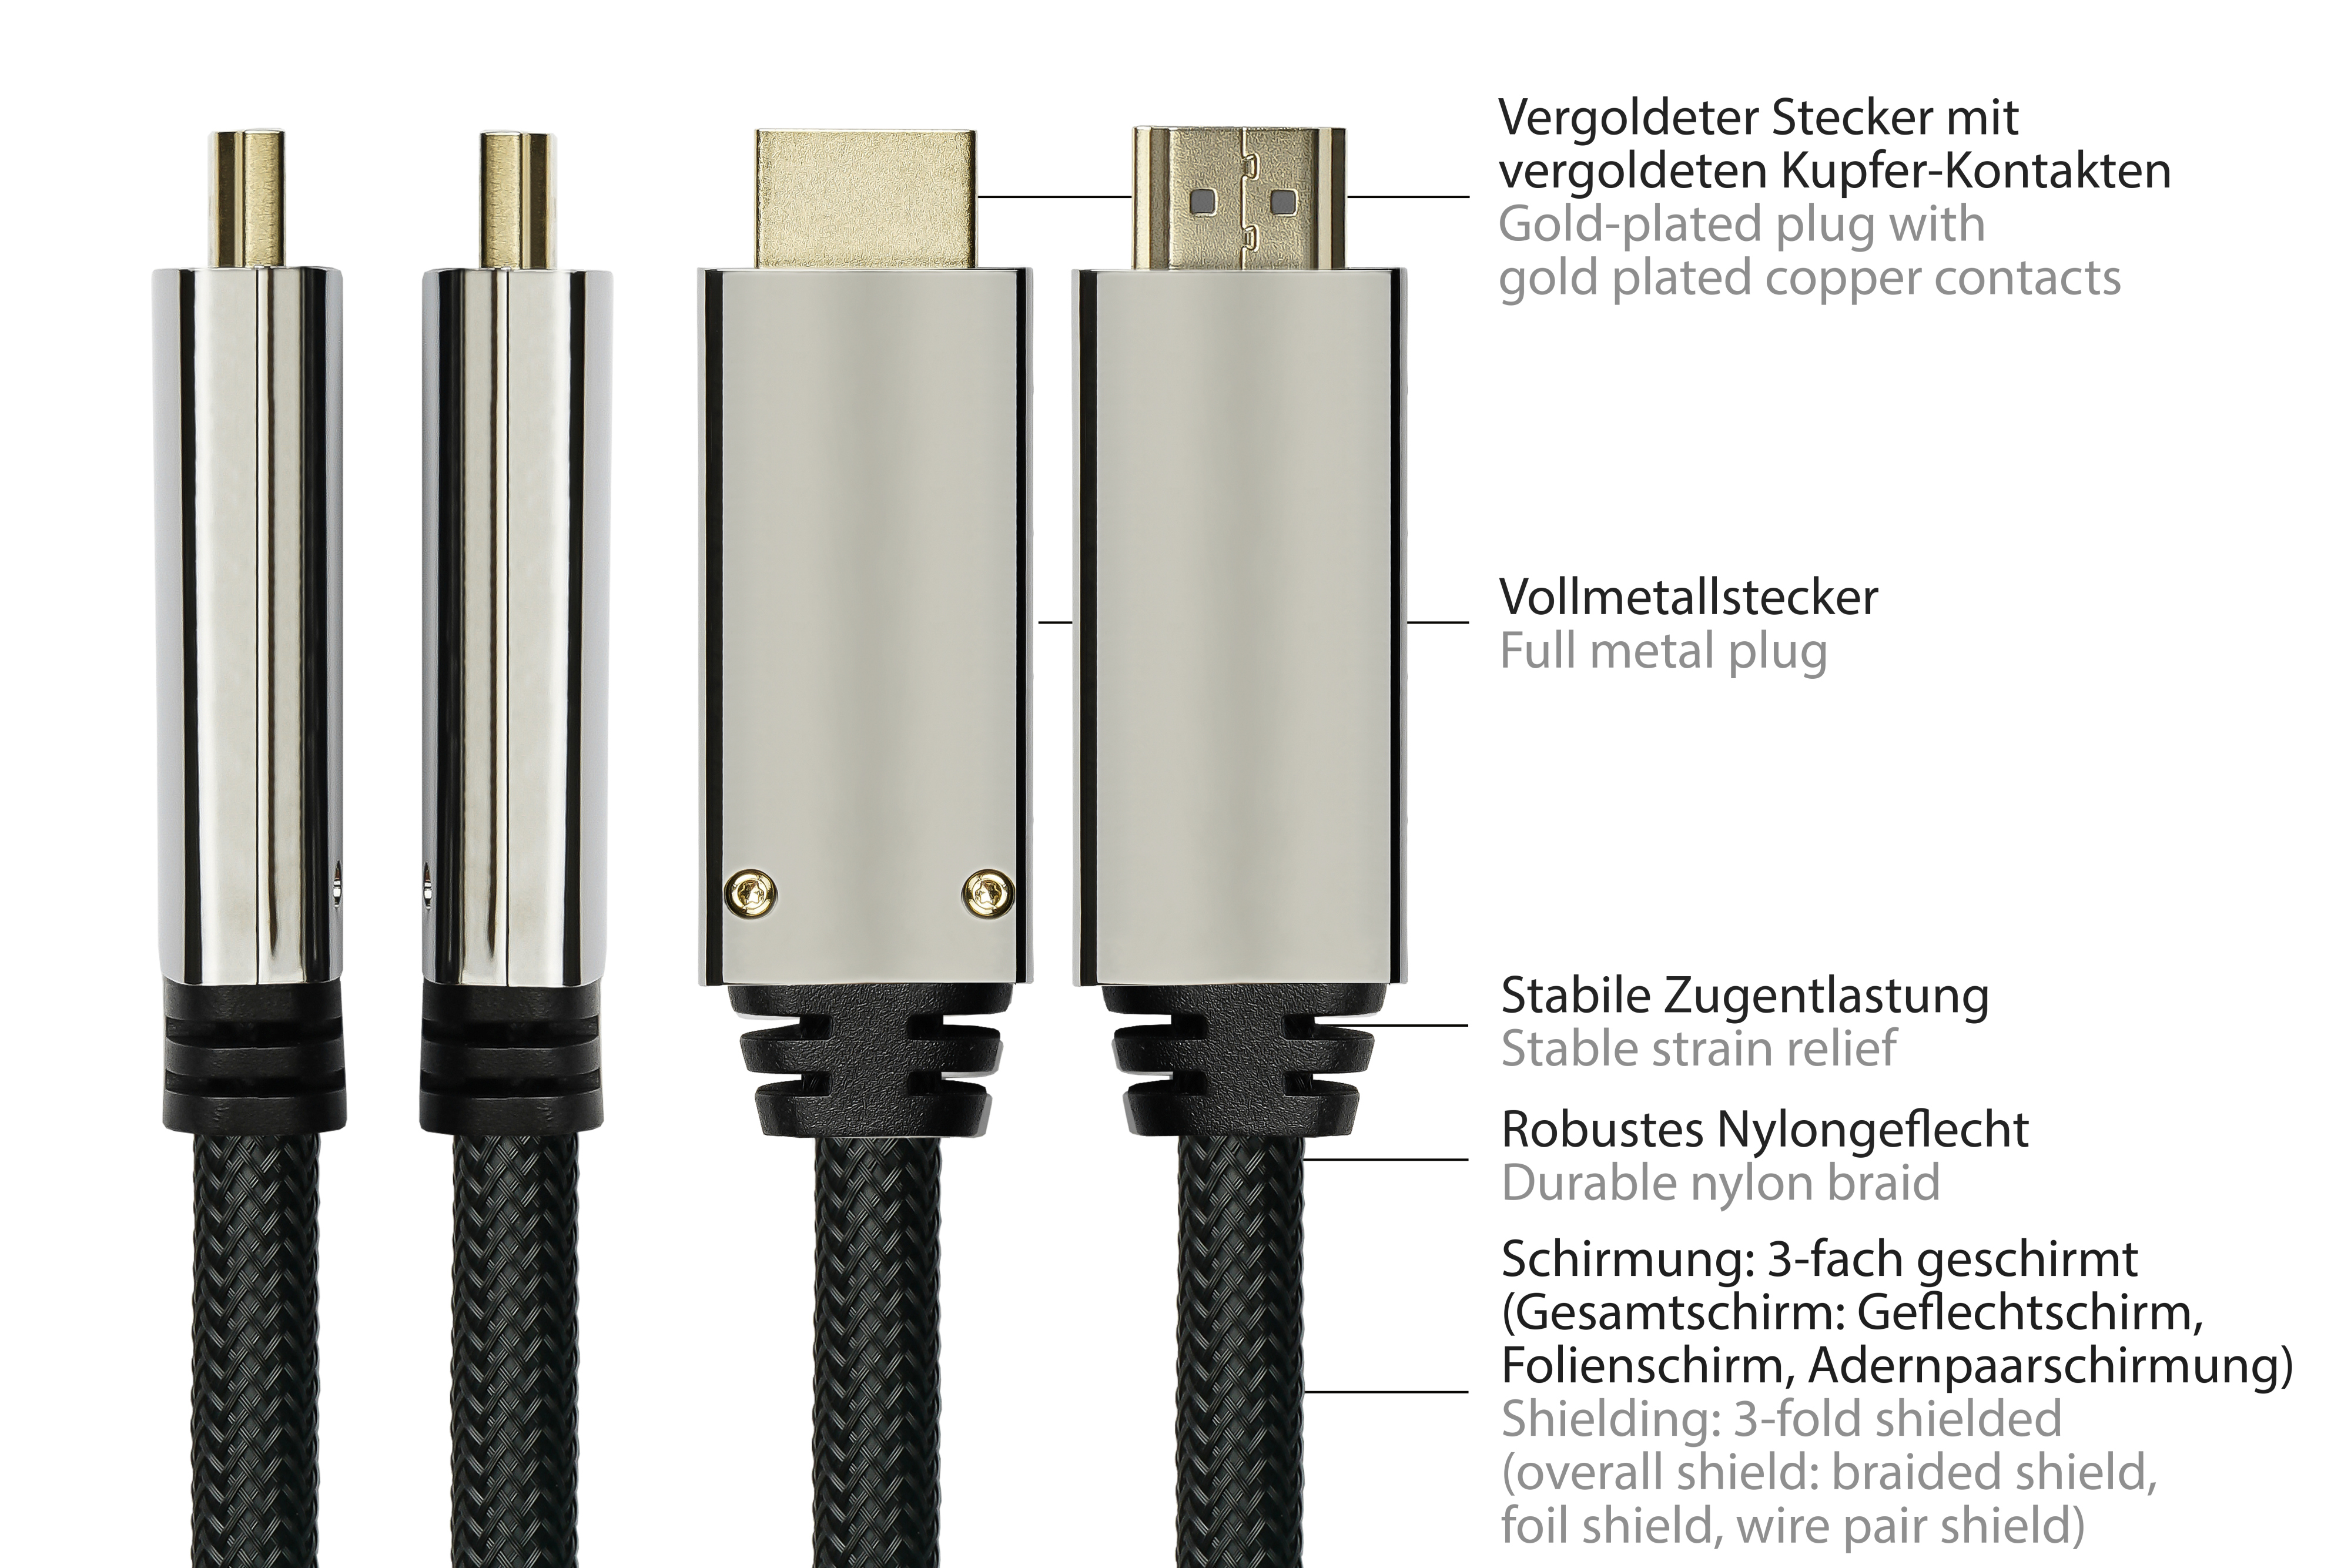 HDMI schwarz, an 3m, m 1.4 Anschlusskabel PYTHON 3 DisplayPort Displayport, 2.0,